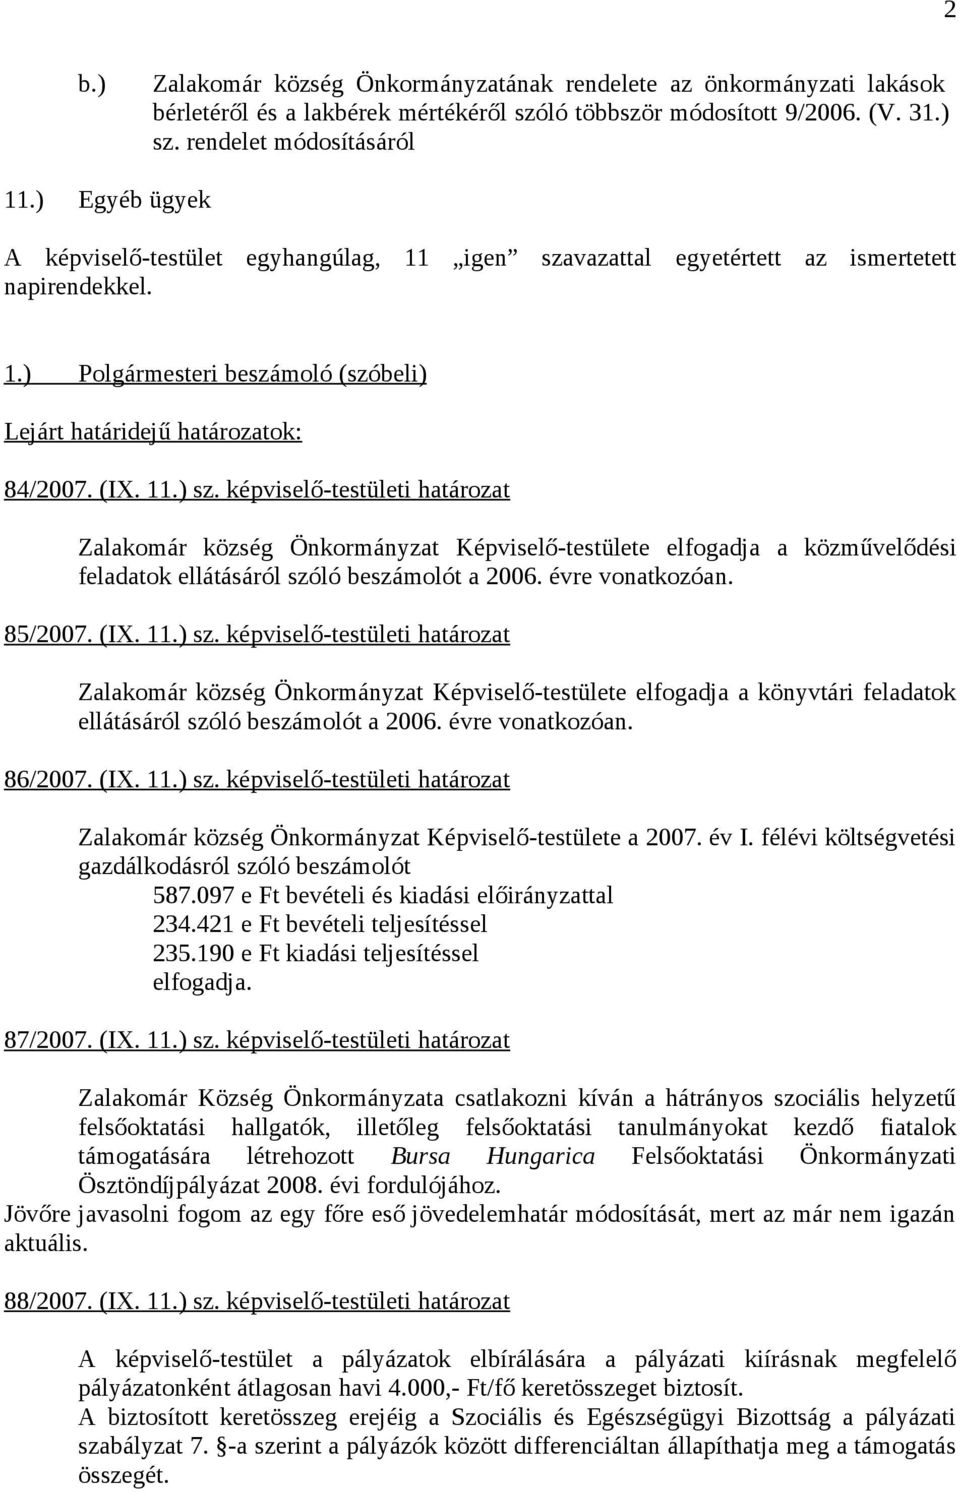 képviselő-testületi határozat Zalakomár község Önkormányzat Képviselő-testülete elfogadja a közművelődési feladatok ellátásáról szóló beszámolót a 2006. évre vonatkozóan. 85/2007. (IX. 11.) sz.